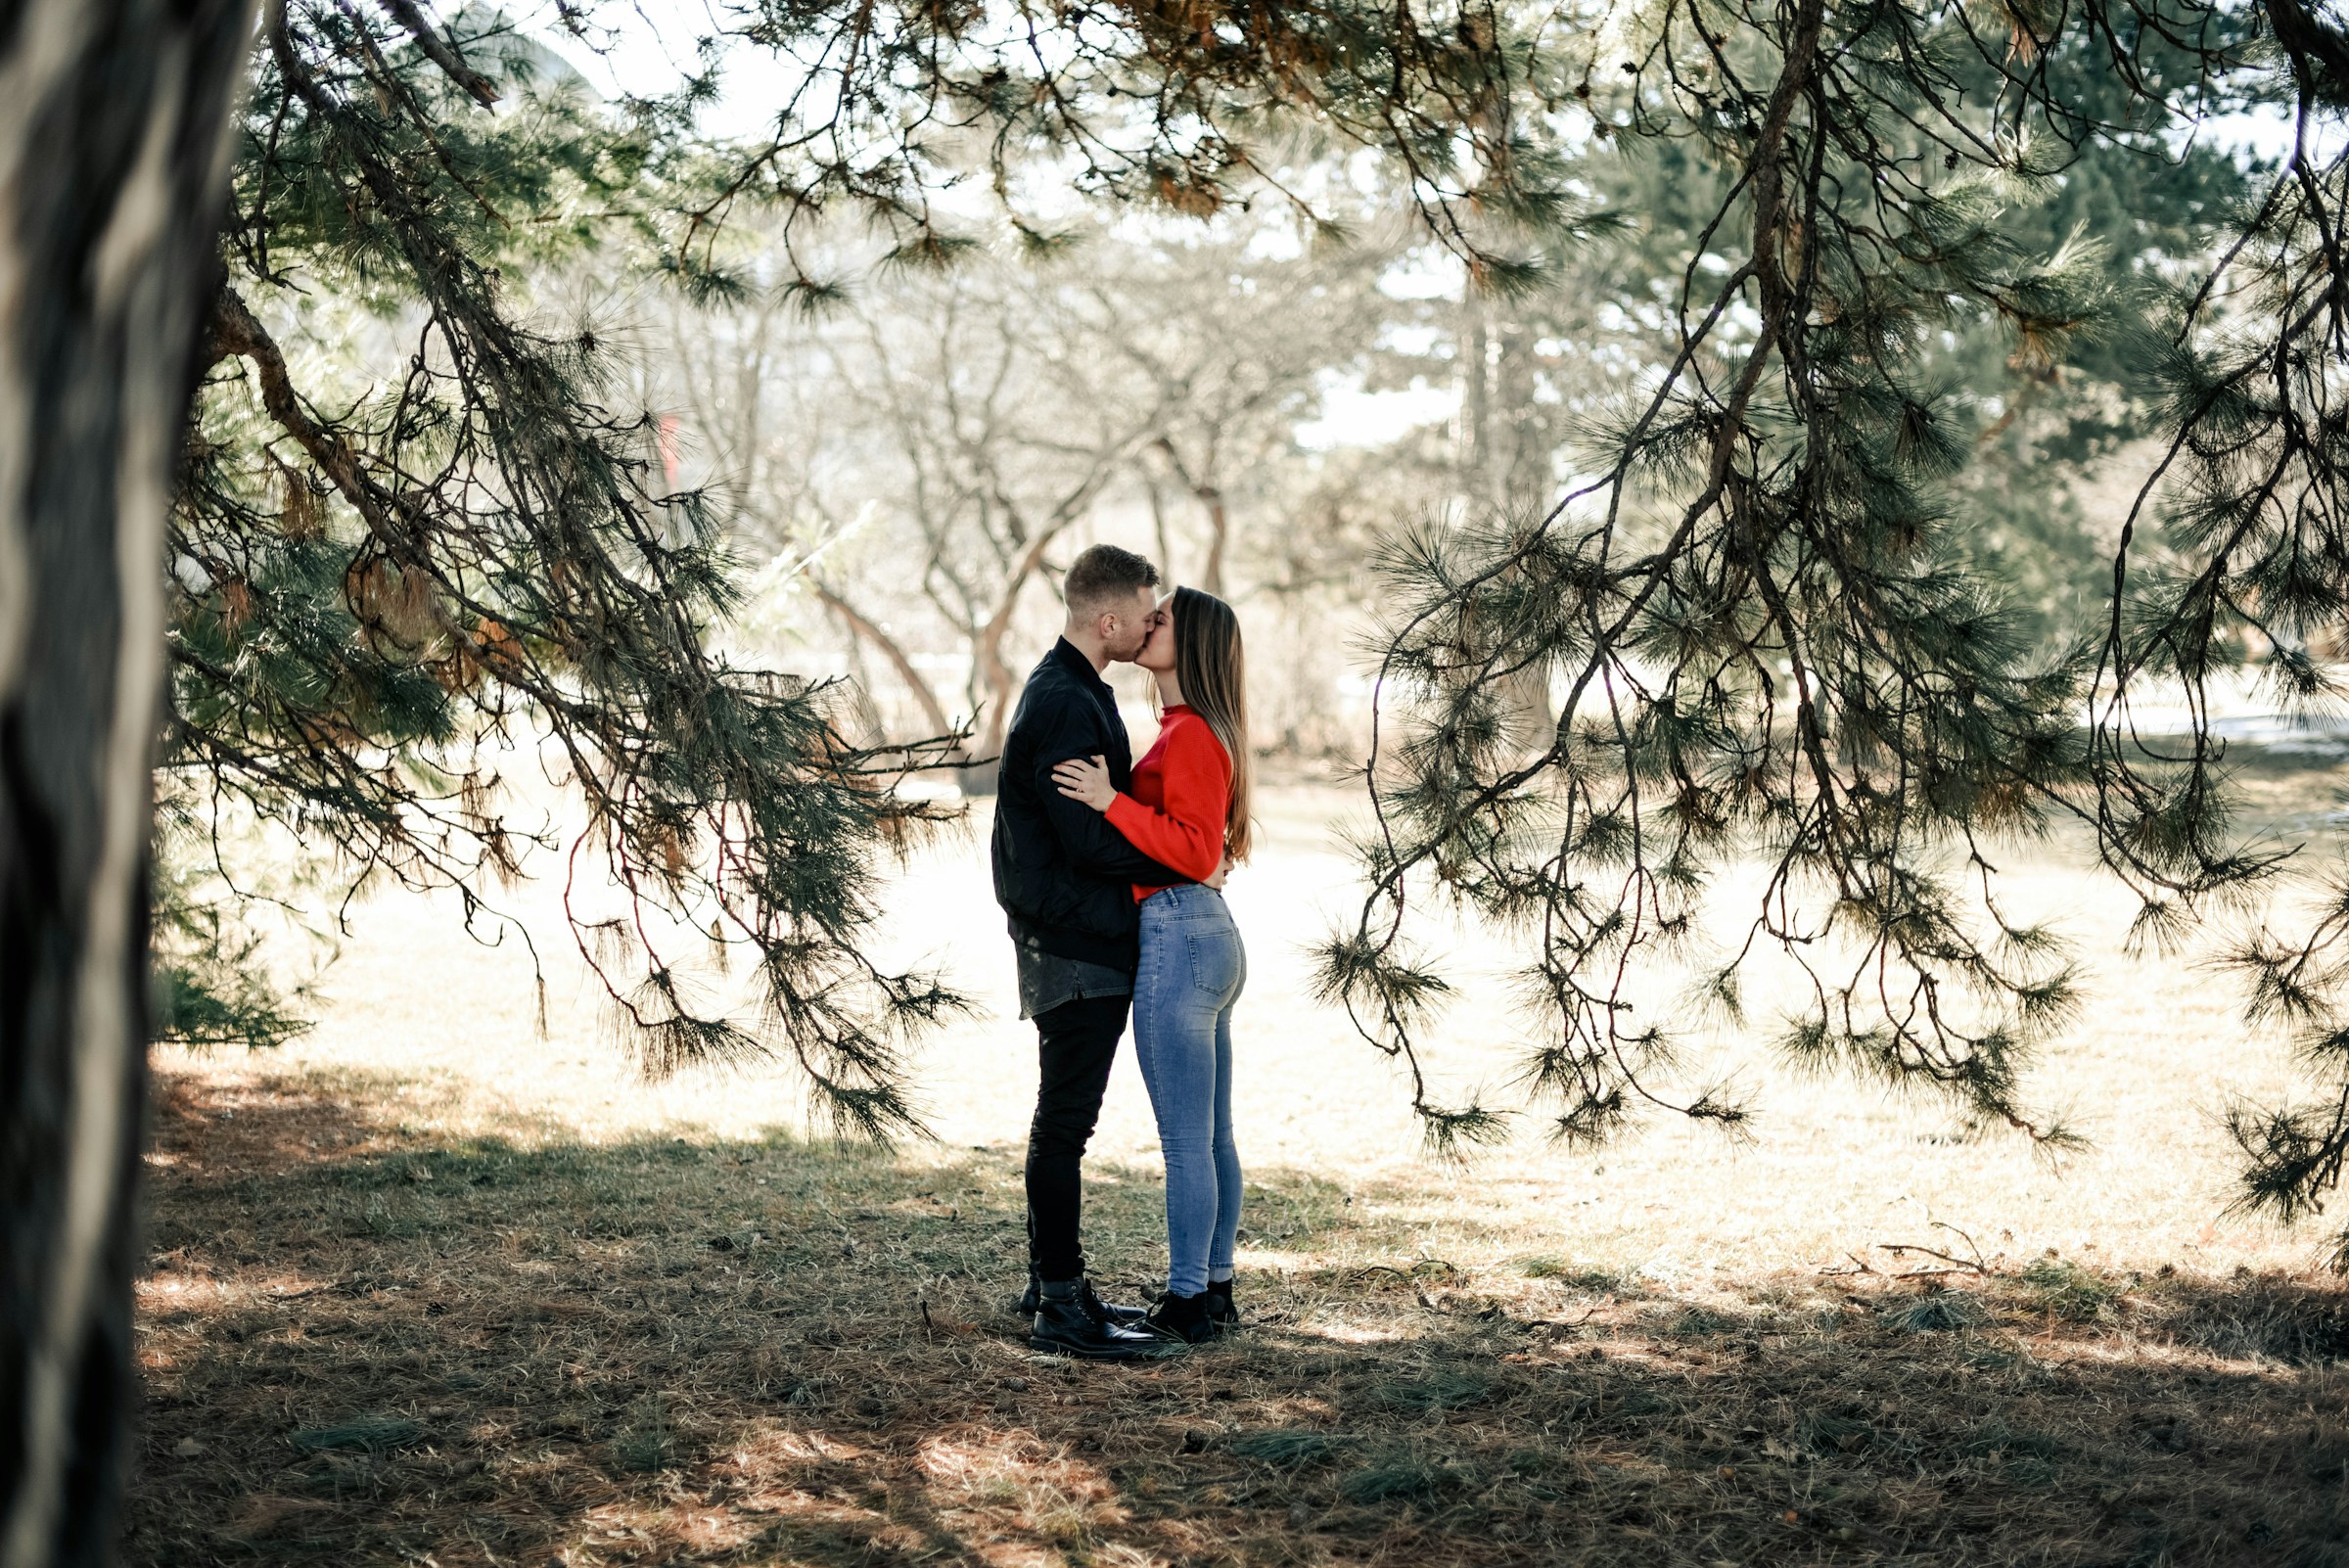 Ein Paar küsst sich in einem Wald | Quelle: Unsplash